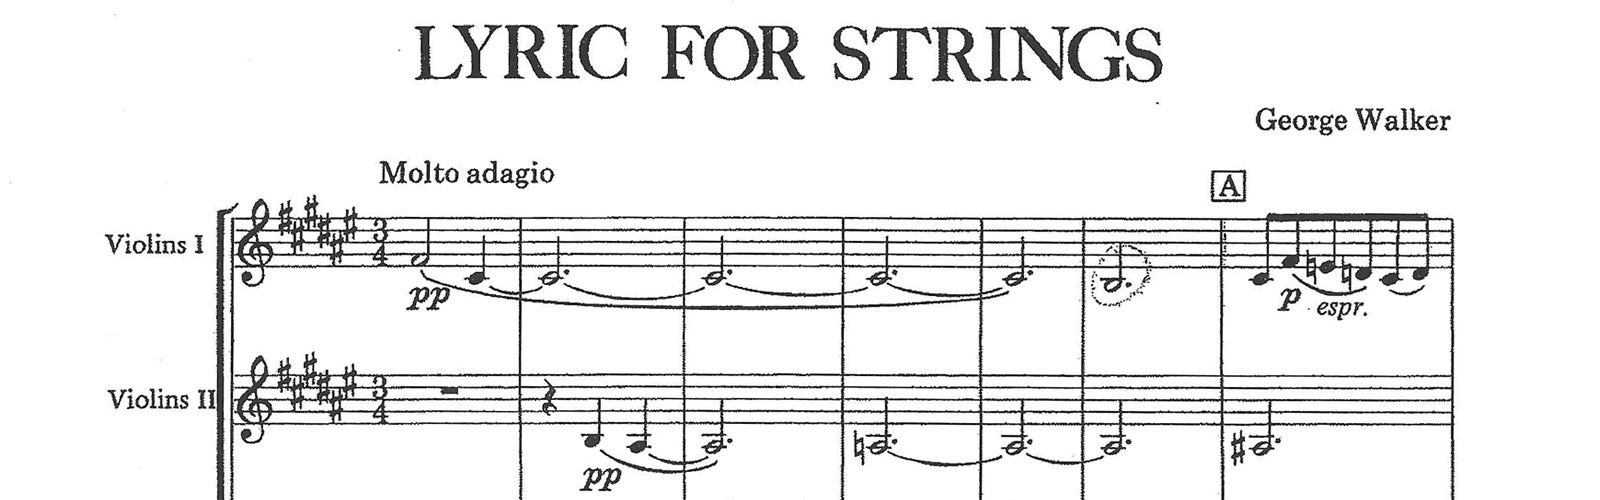 George Walker Lyric for Strings.jpg